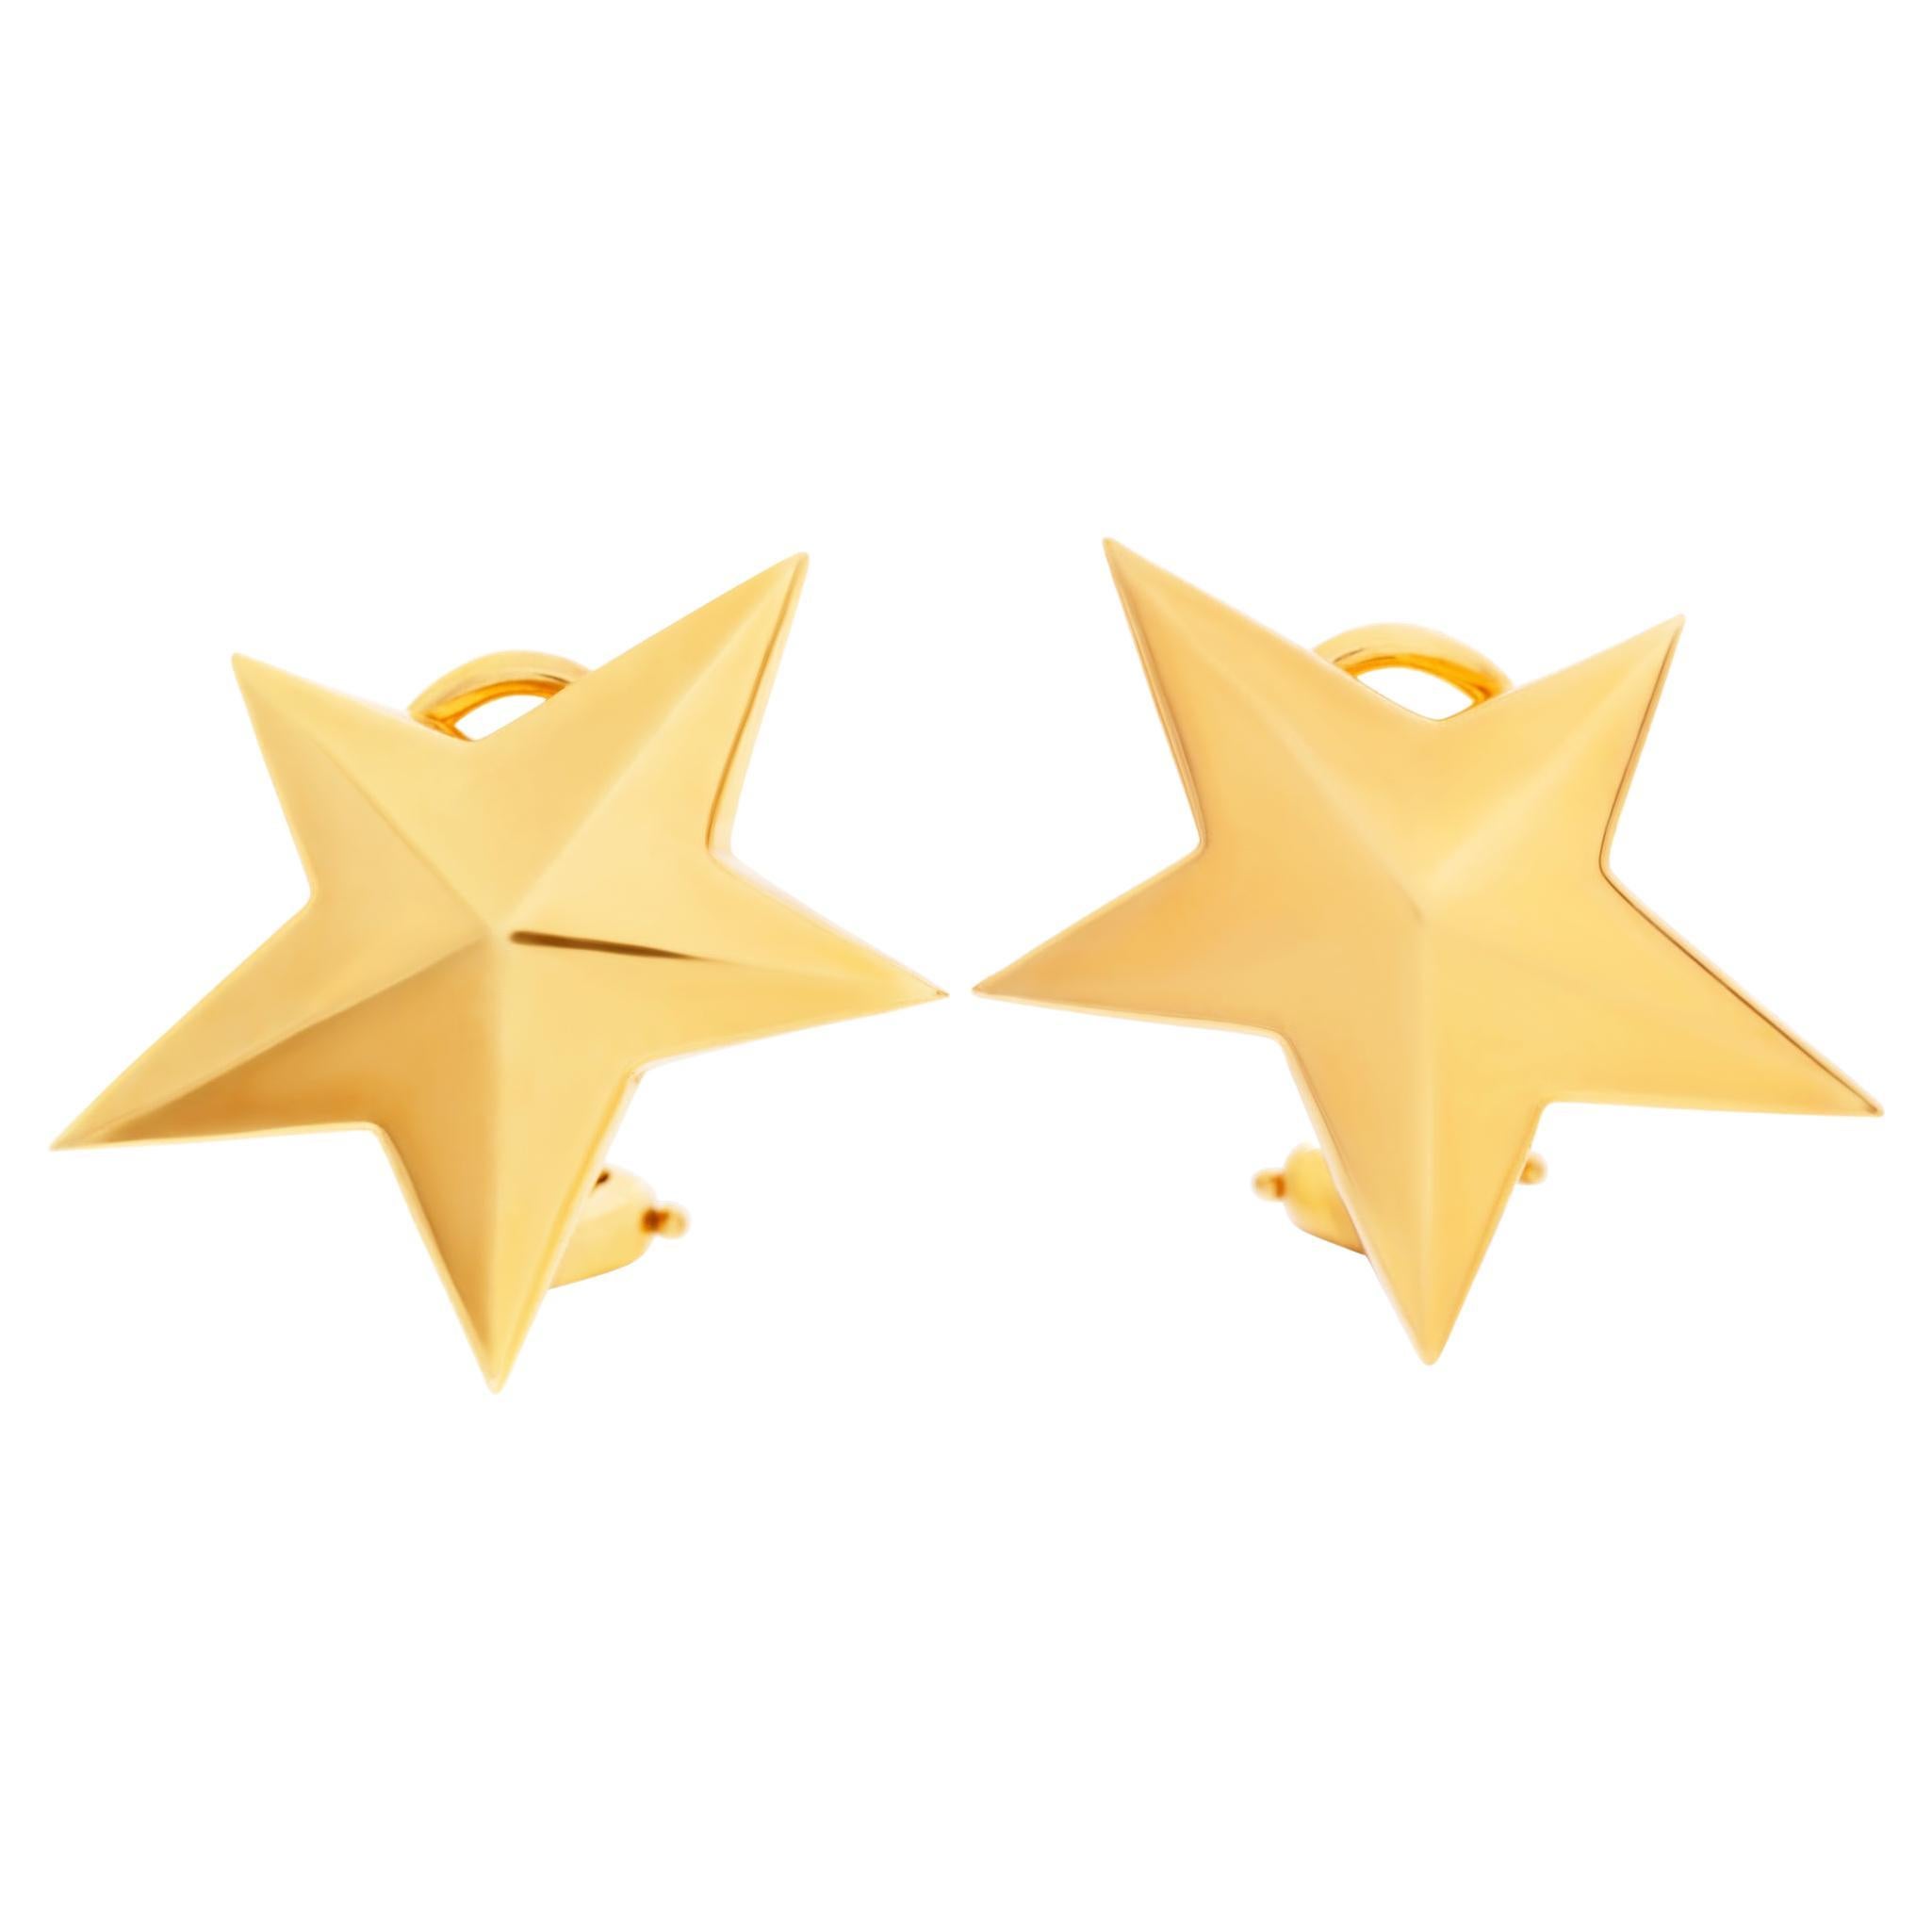 Earrings in 18k Yellow Gold, Tiffany & Co. Star Design